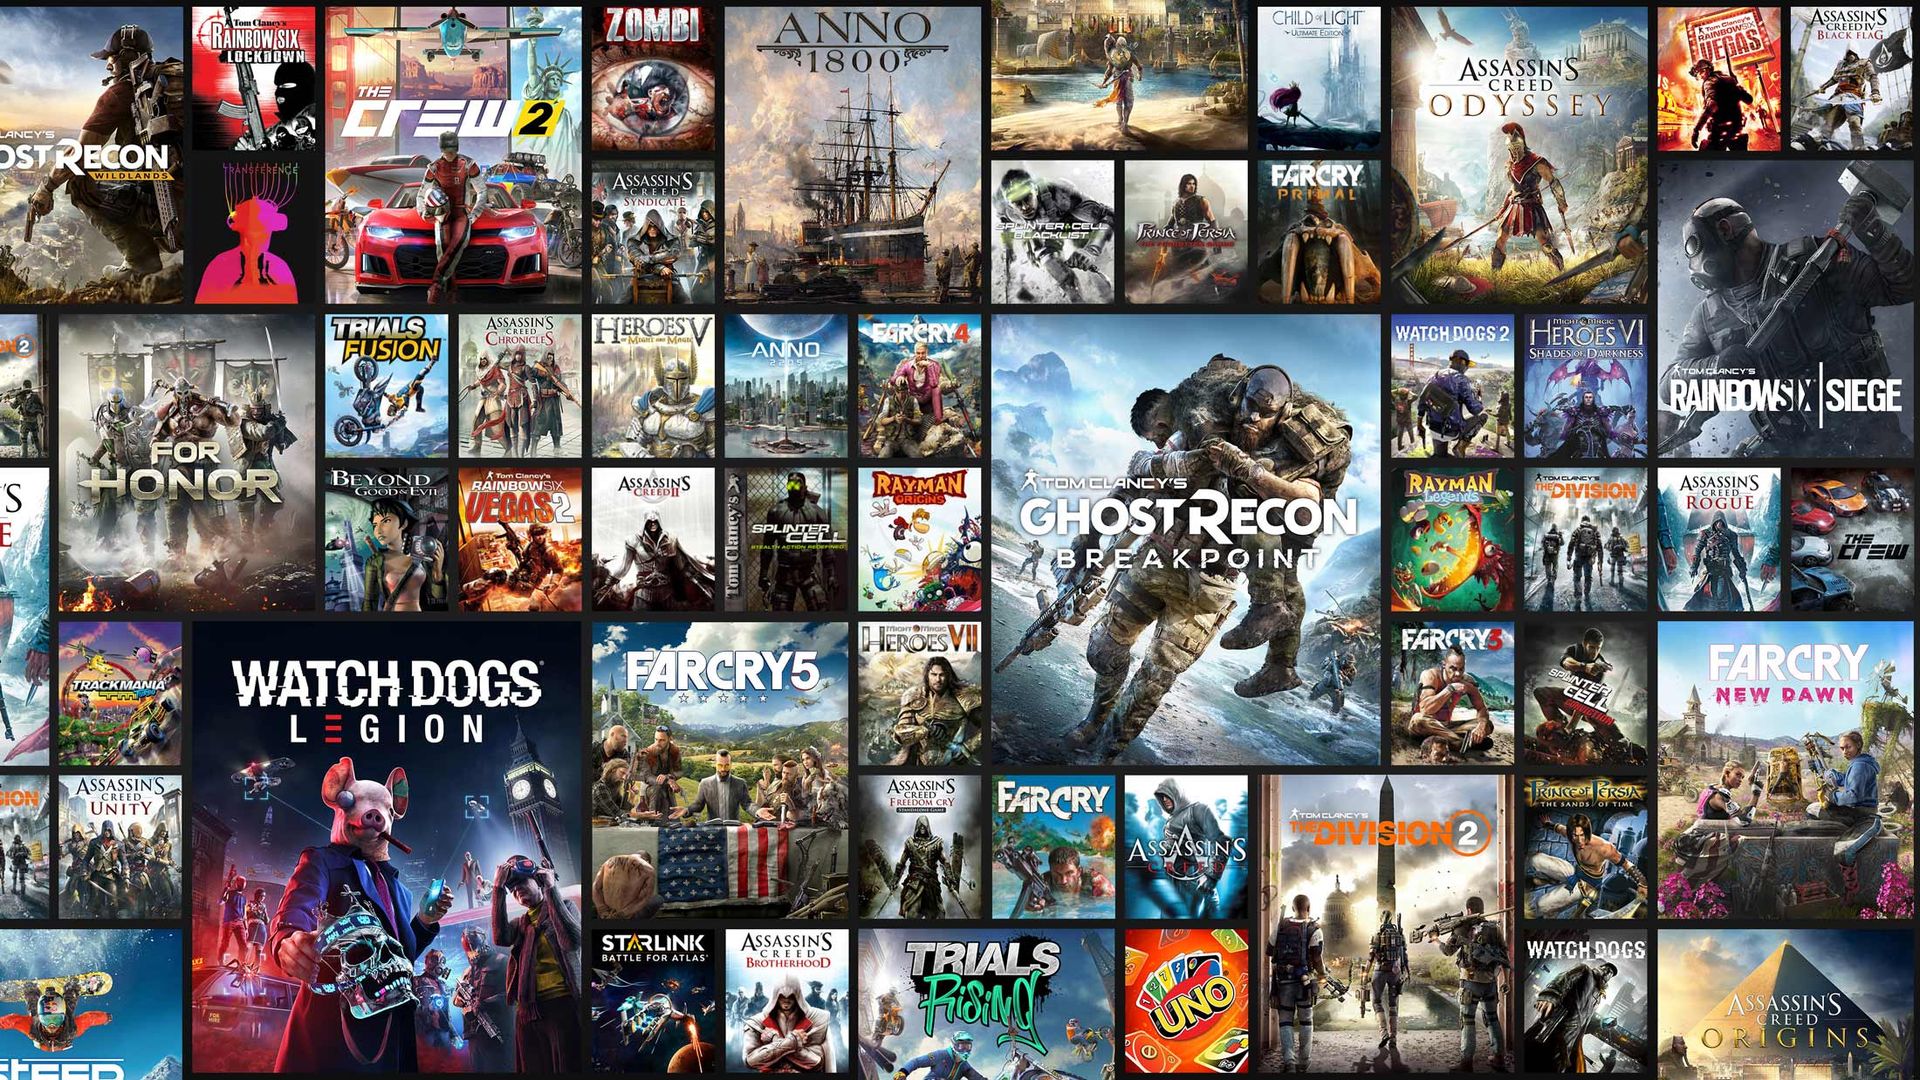 育碧十分自大 旗下11款本世代游戏销量超万万份